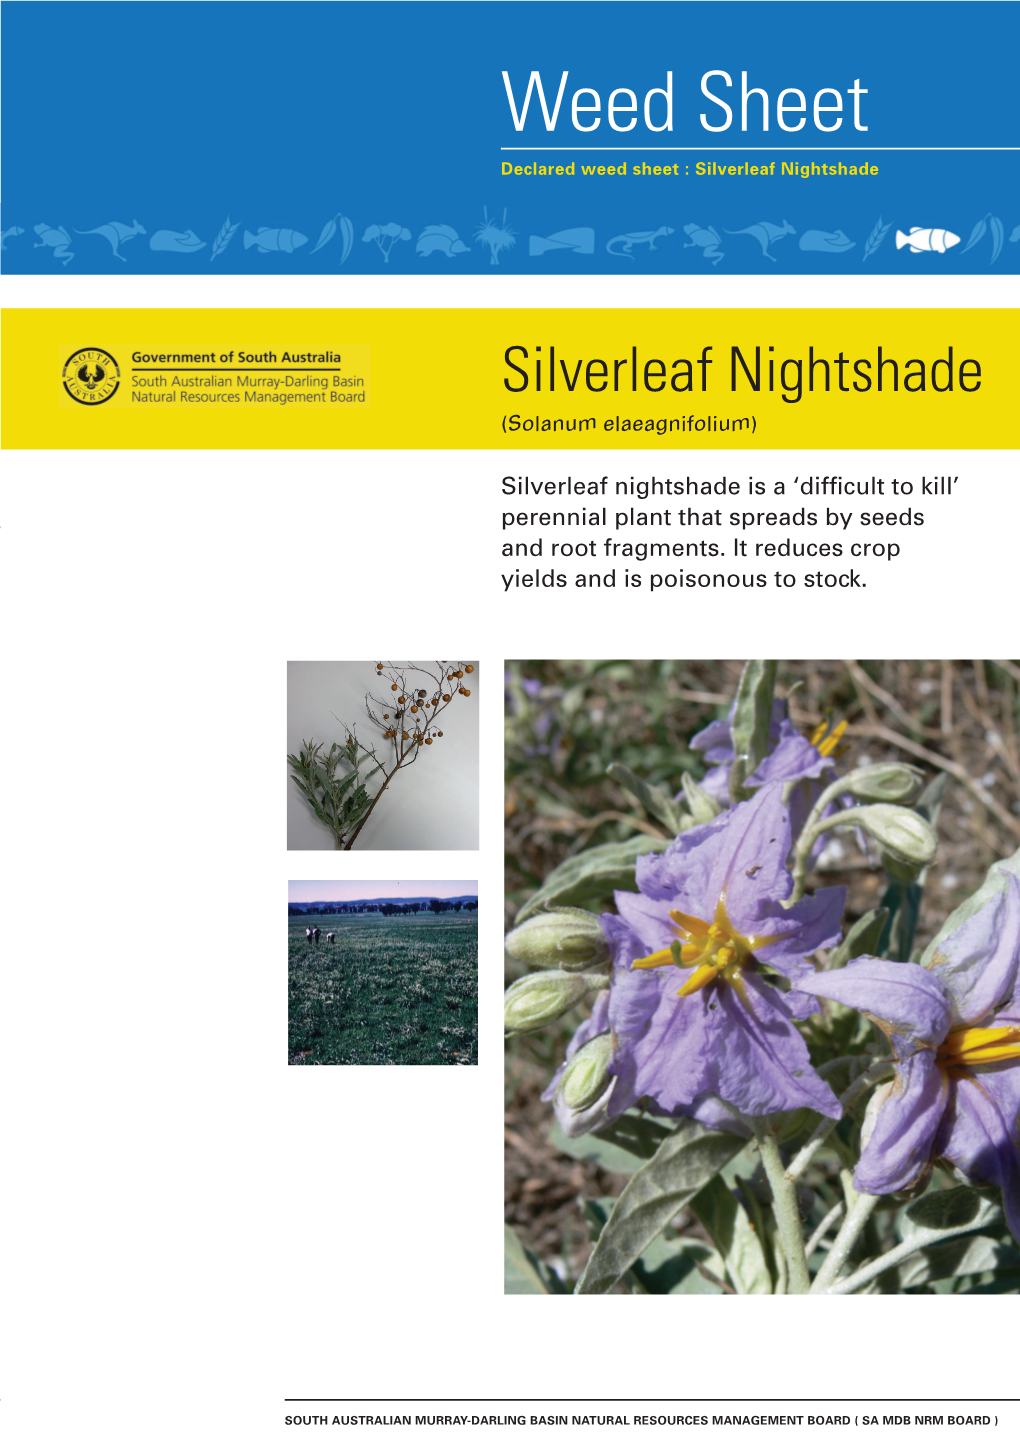 Silverleaf Nightshade